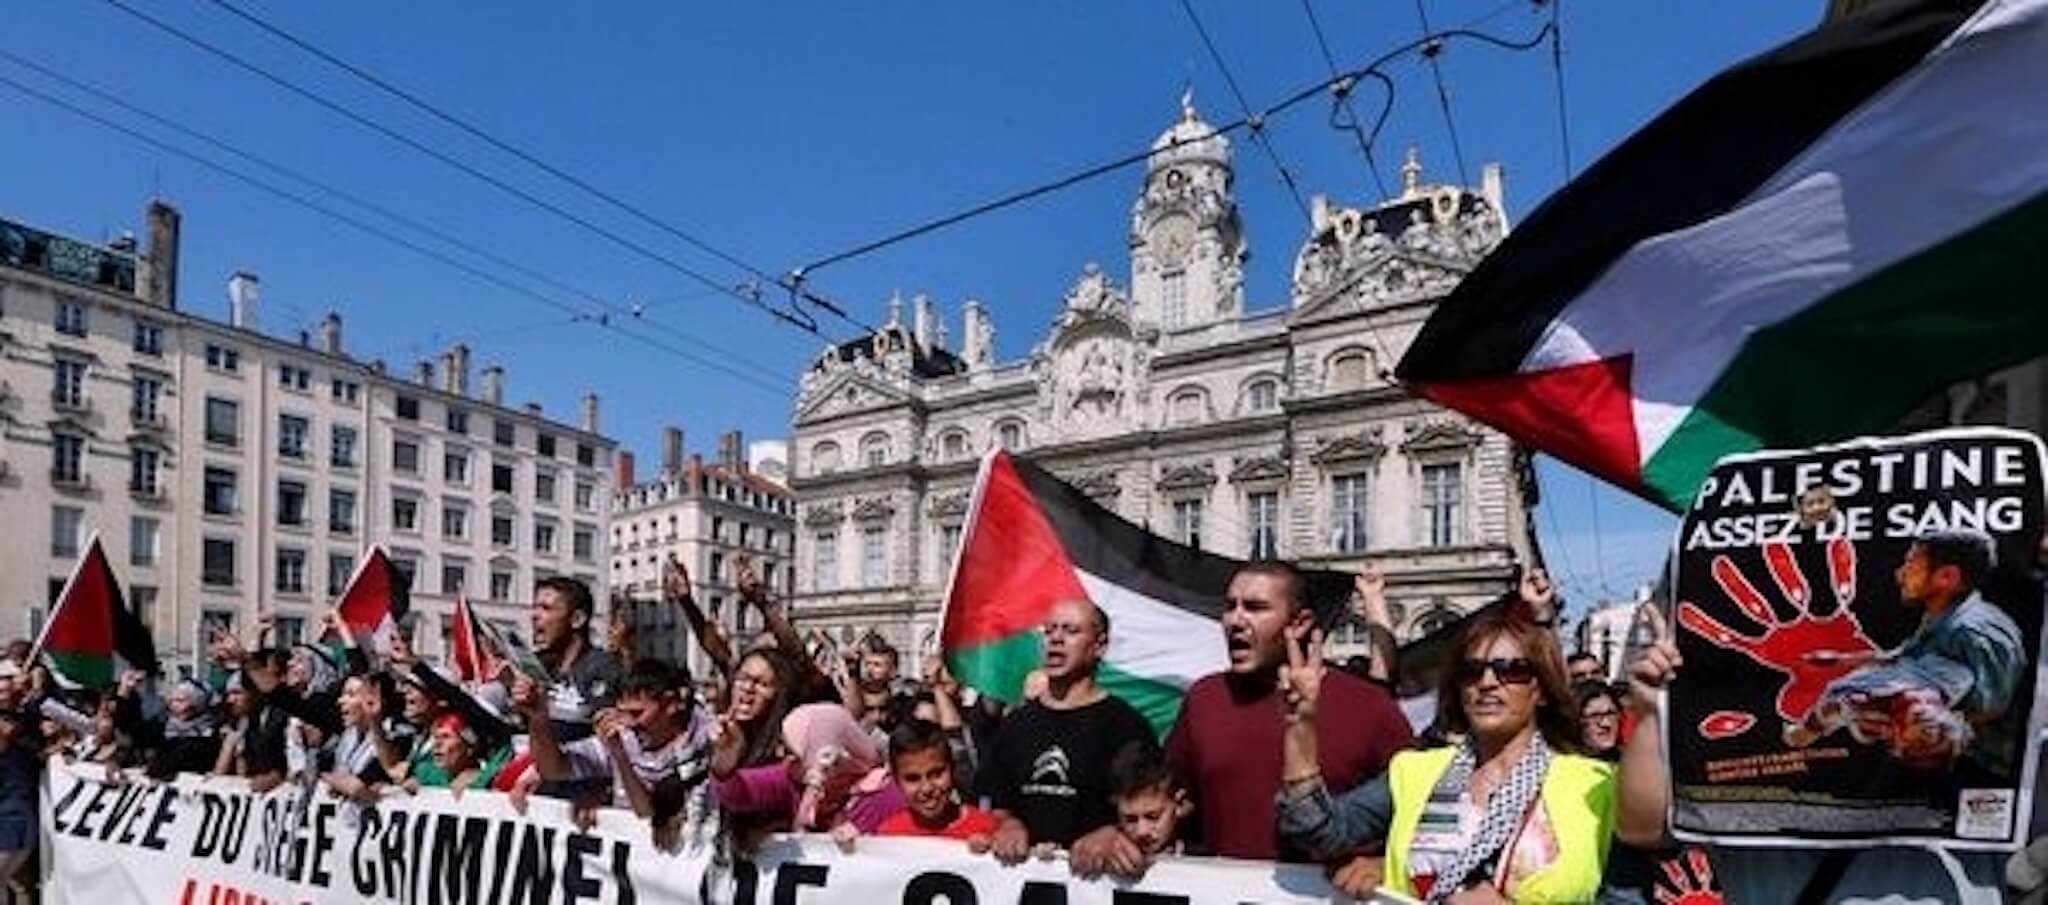 Manifestation à Lyon en soutien à la Palestine, et pour la paix en Israël, en juillet 2014. Image d'archive